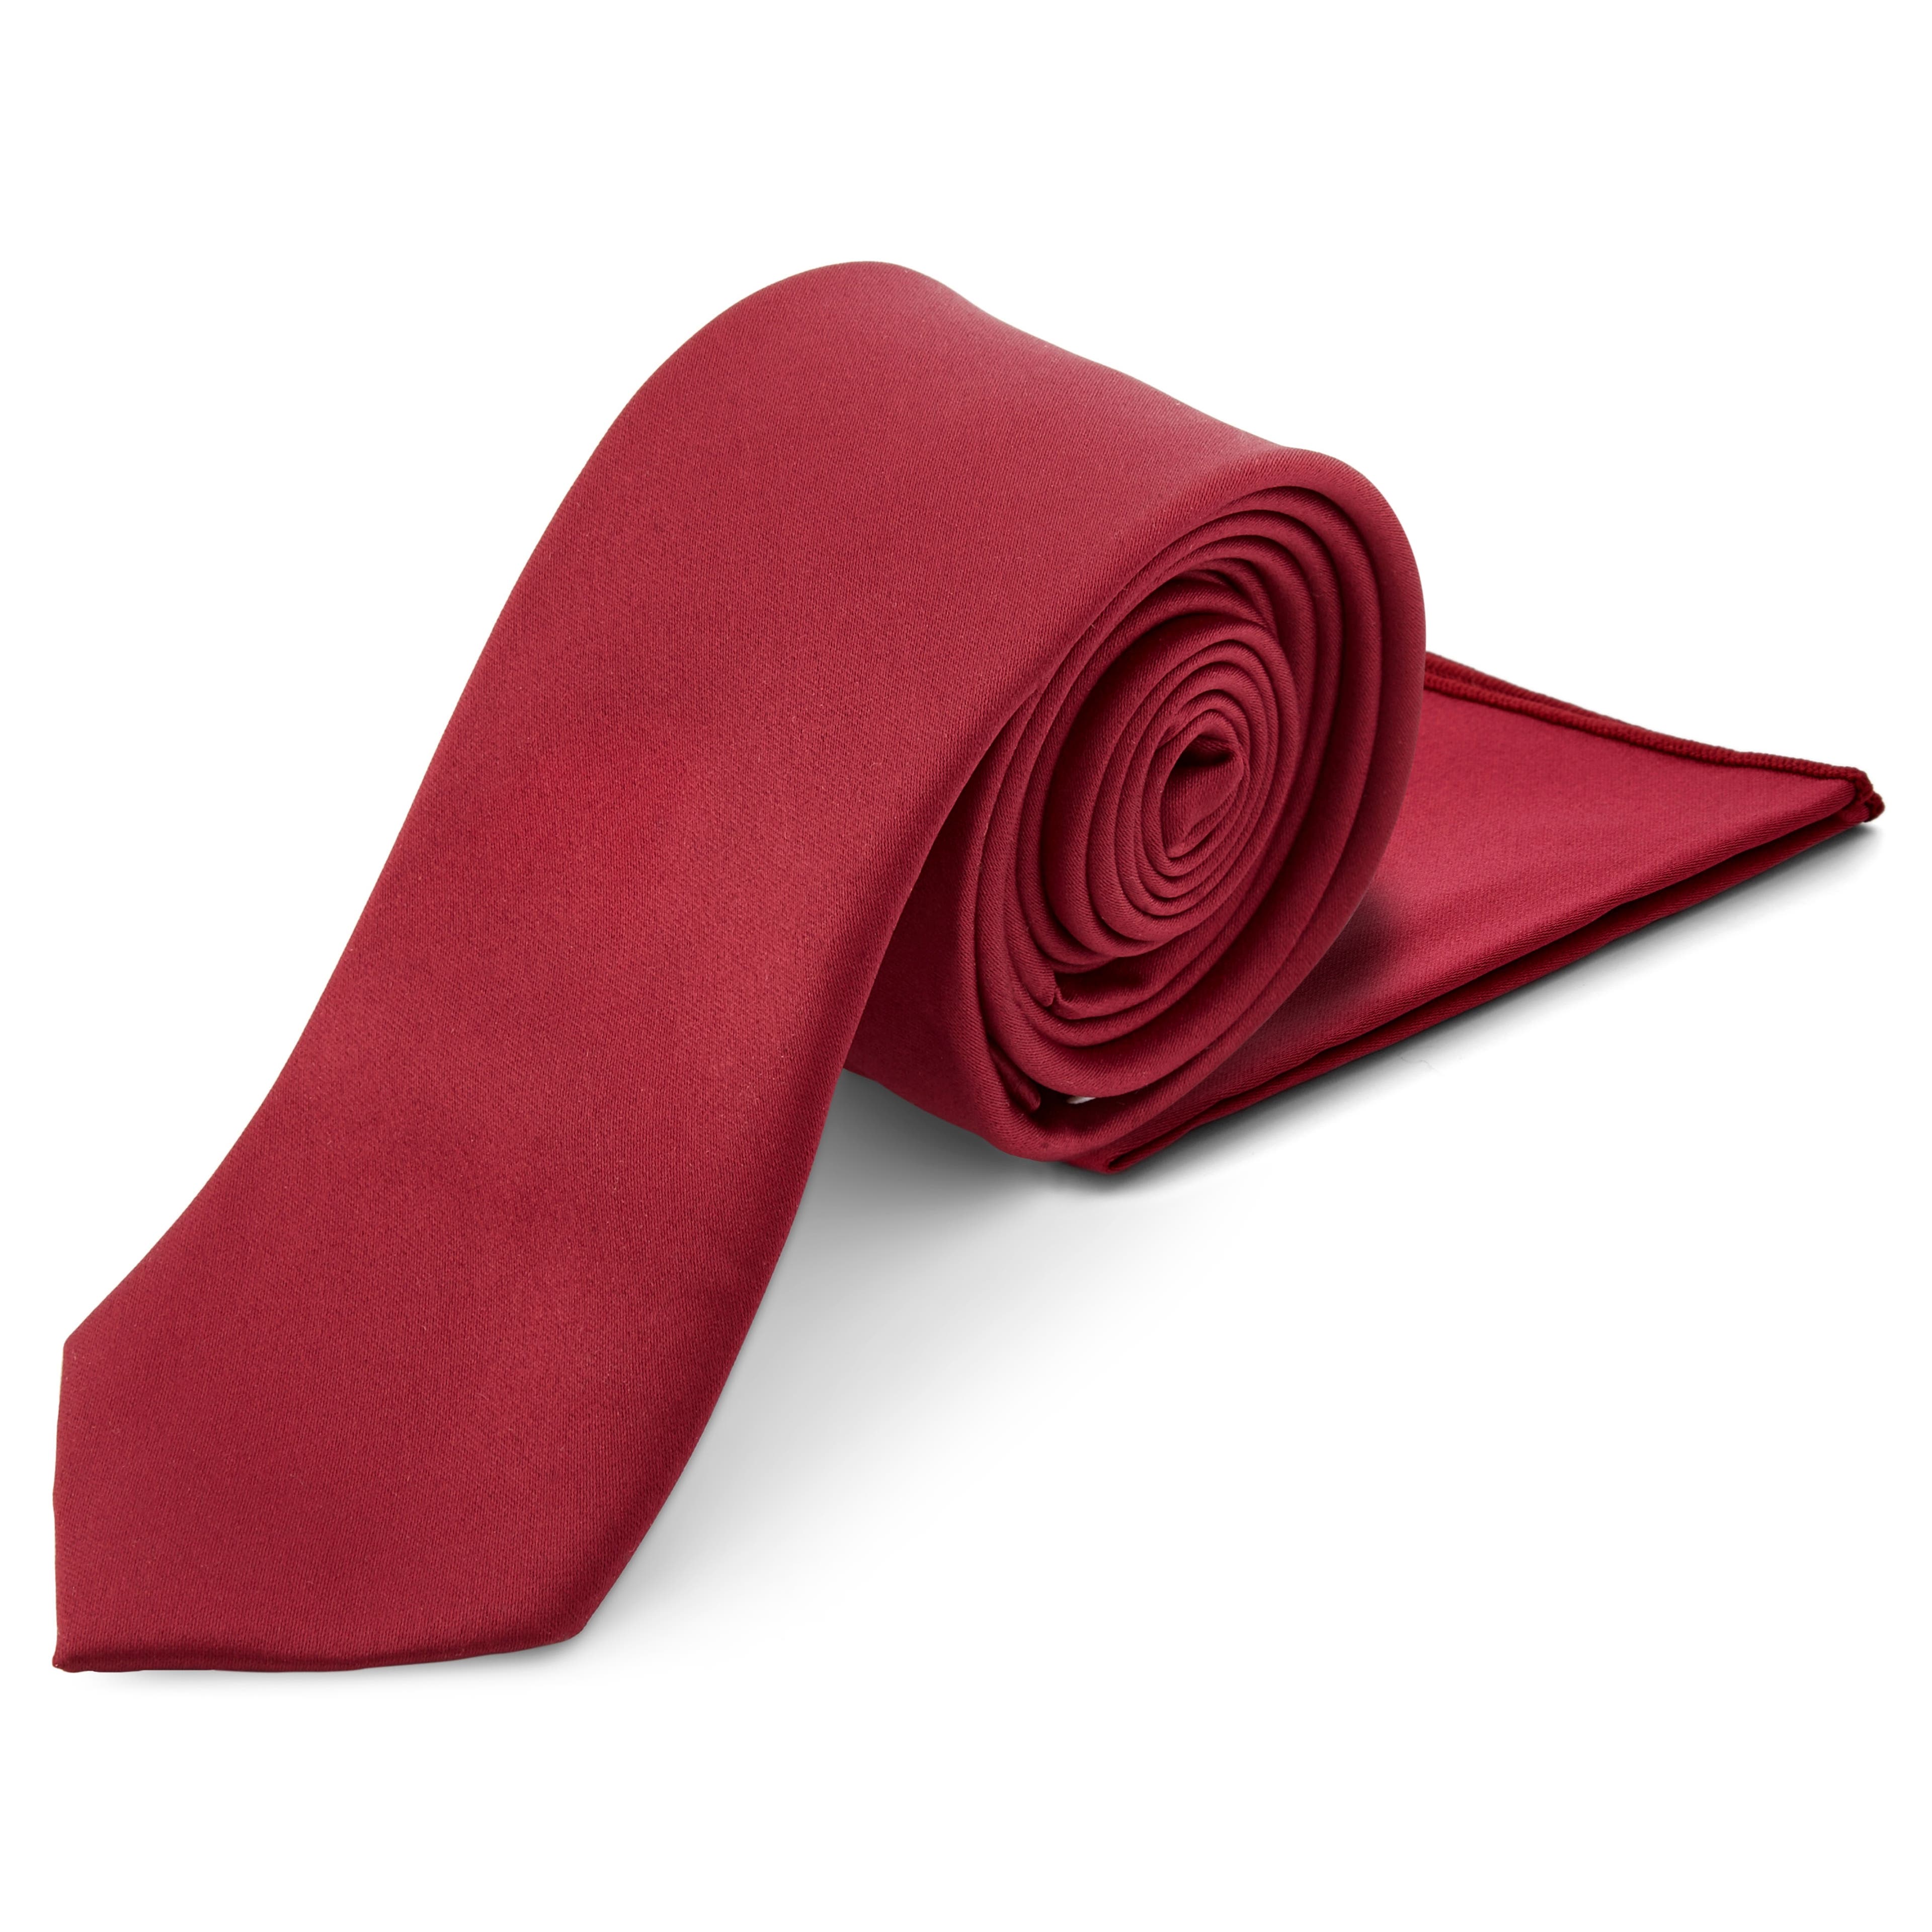 Bordó nyakkendő és díszzsebkendő szett